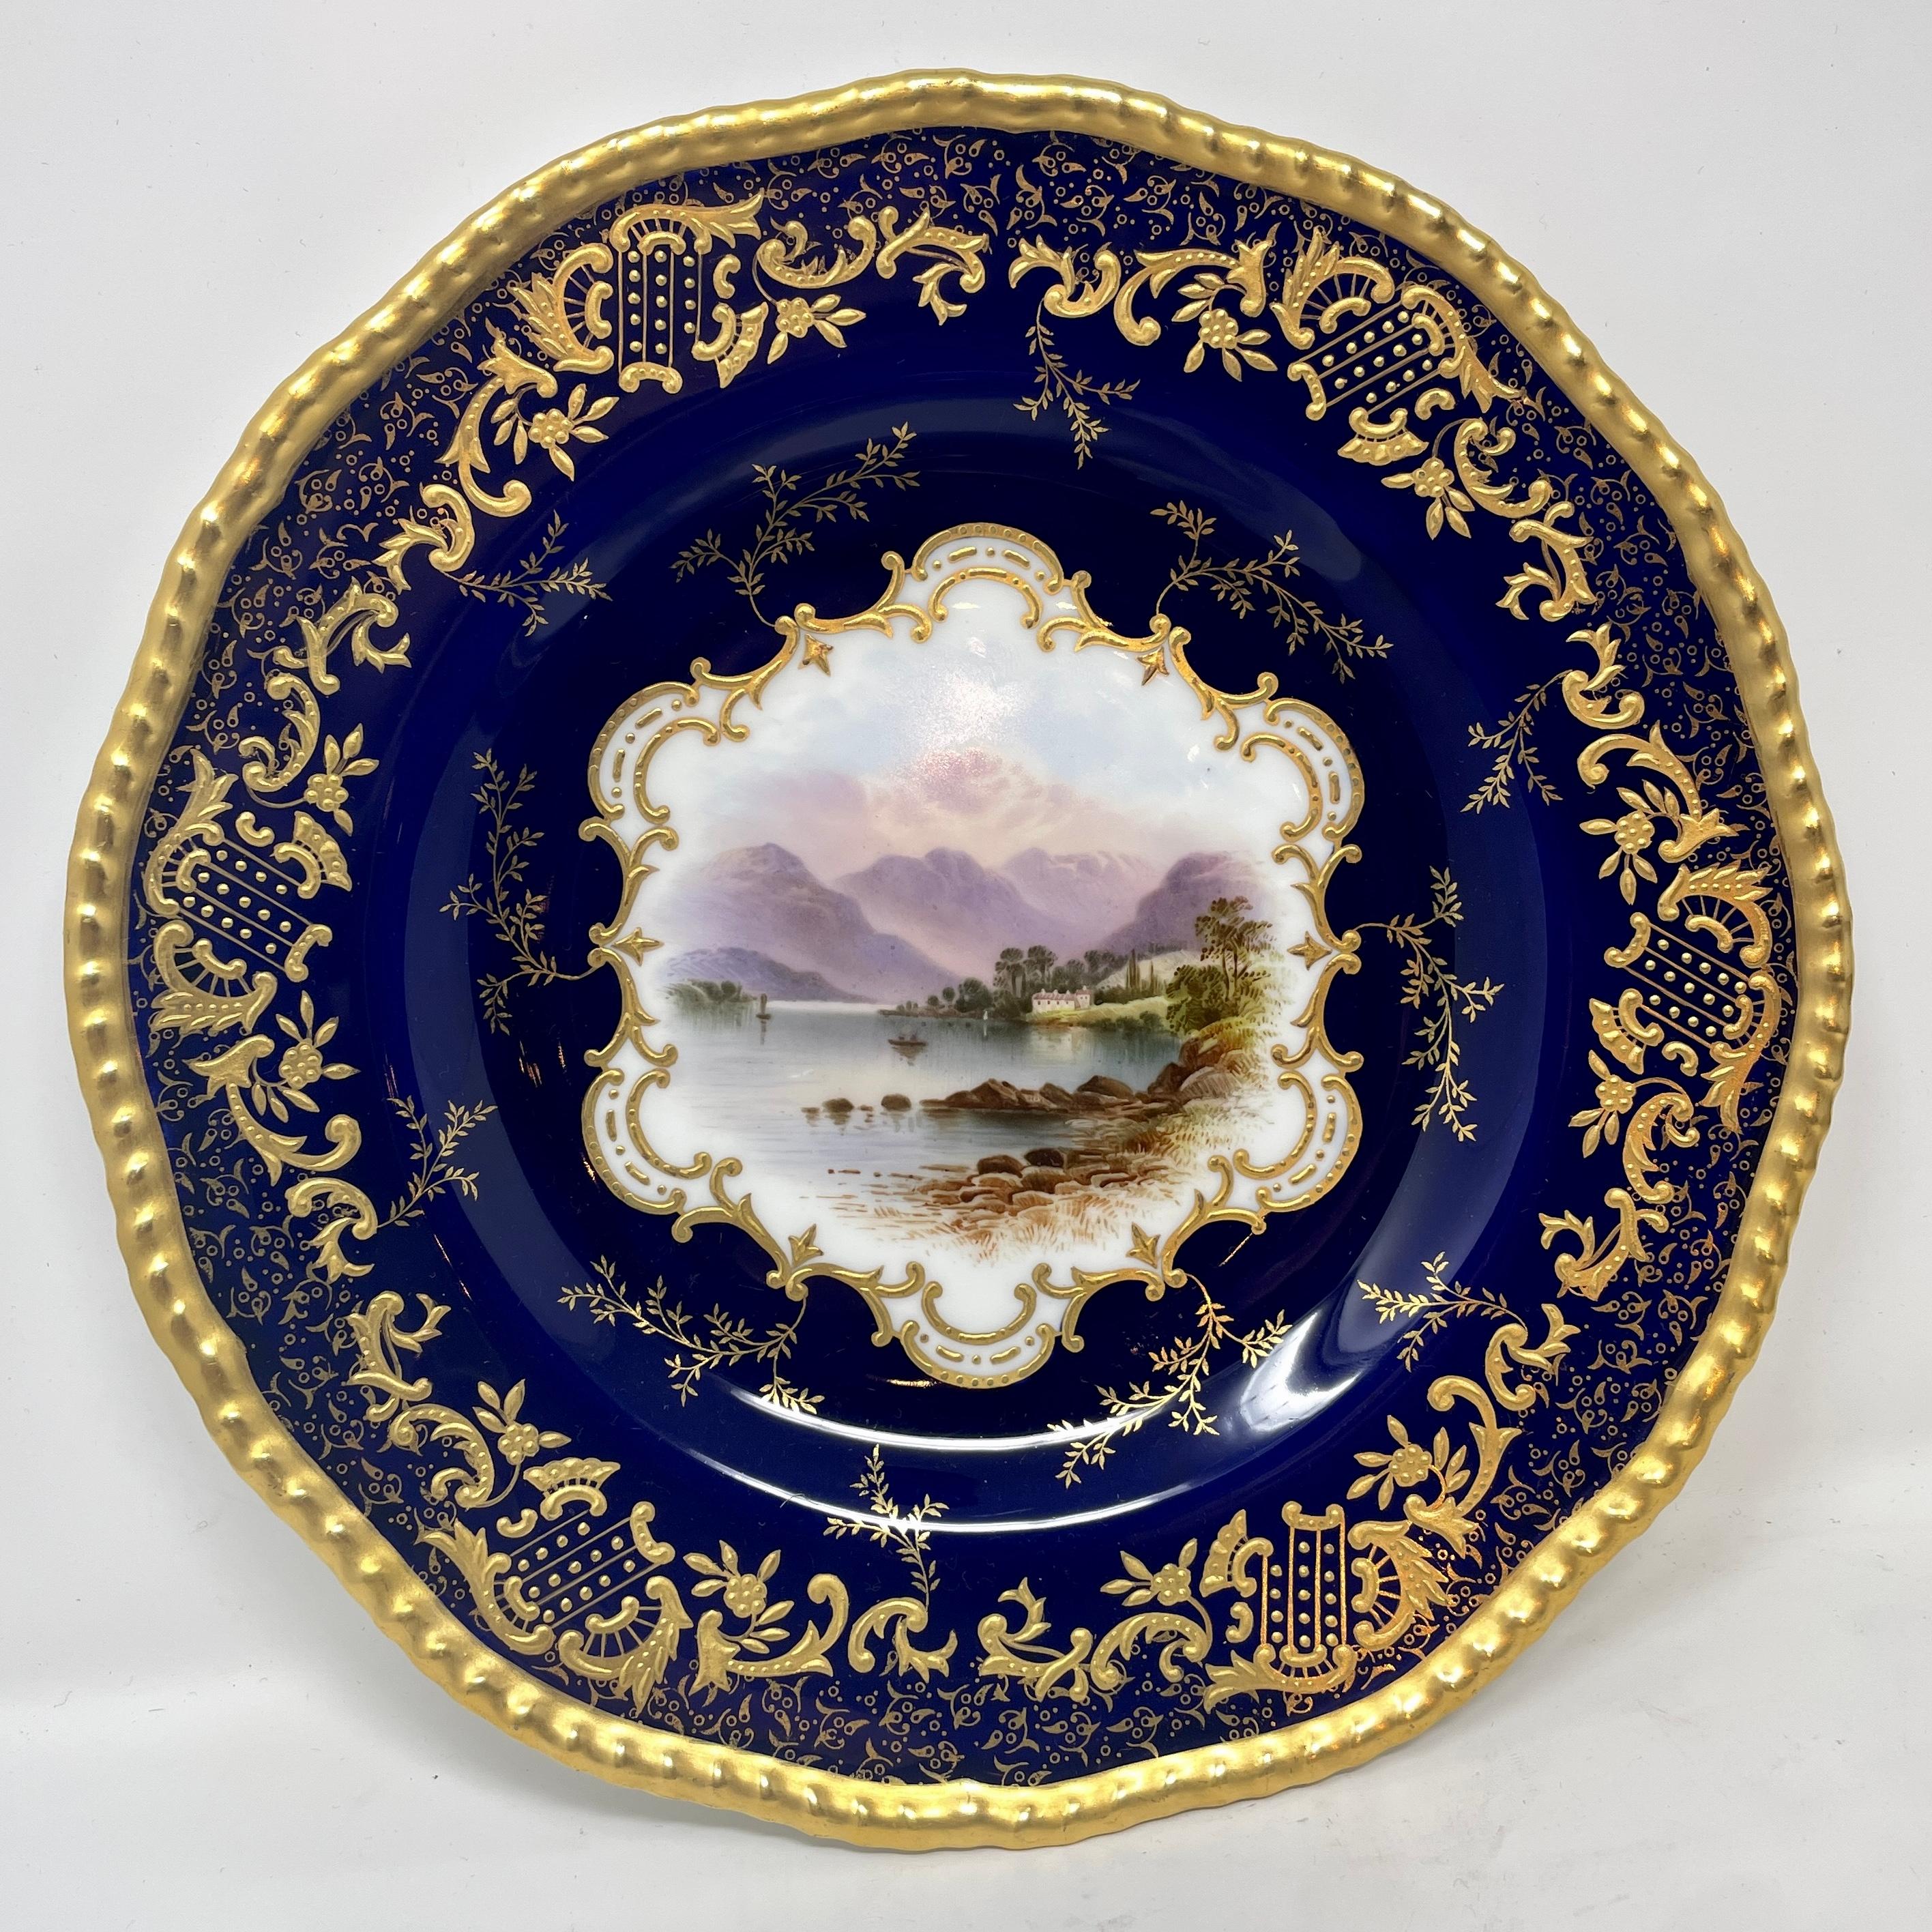 Satz von 10 antiken englischen kobaltblauen und goldenen Coalport-Porzellantellern, um 1900. Jeder Teller hat ein einzigartiges Design in der Mitte. 